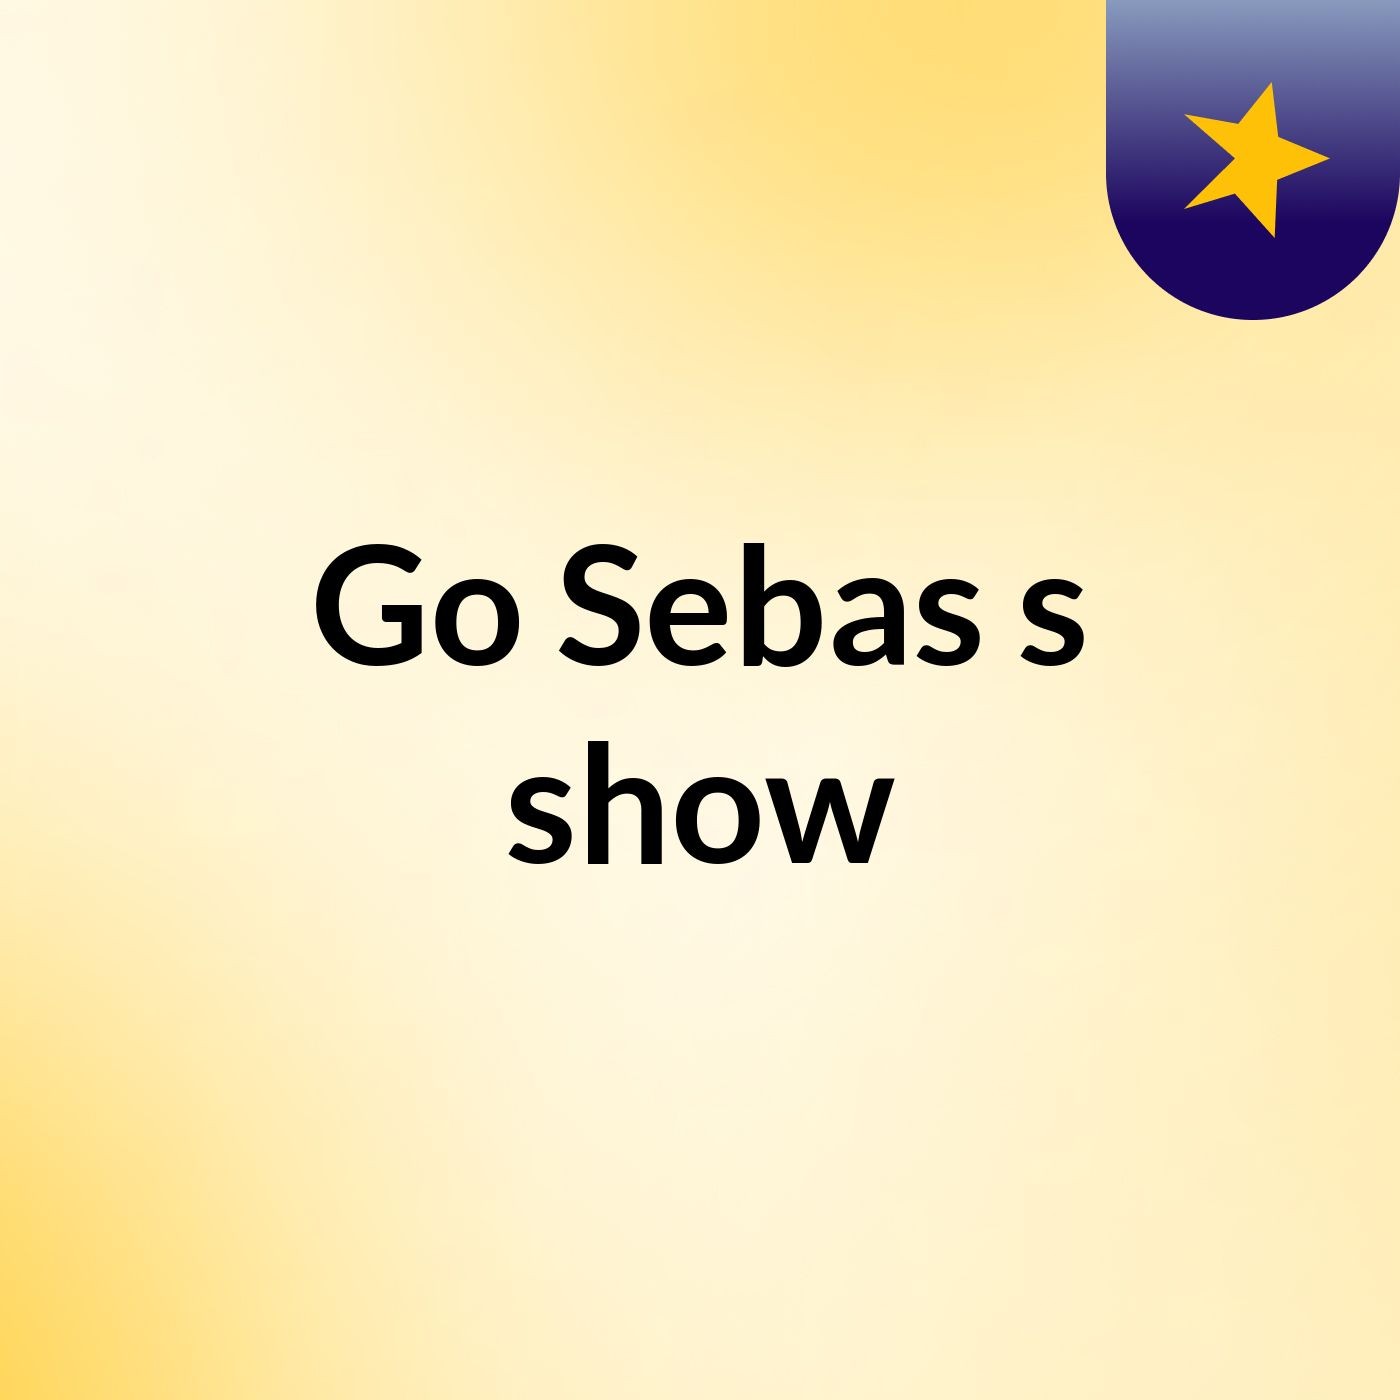 Go Sebas's show